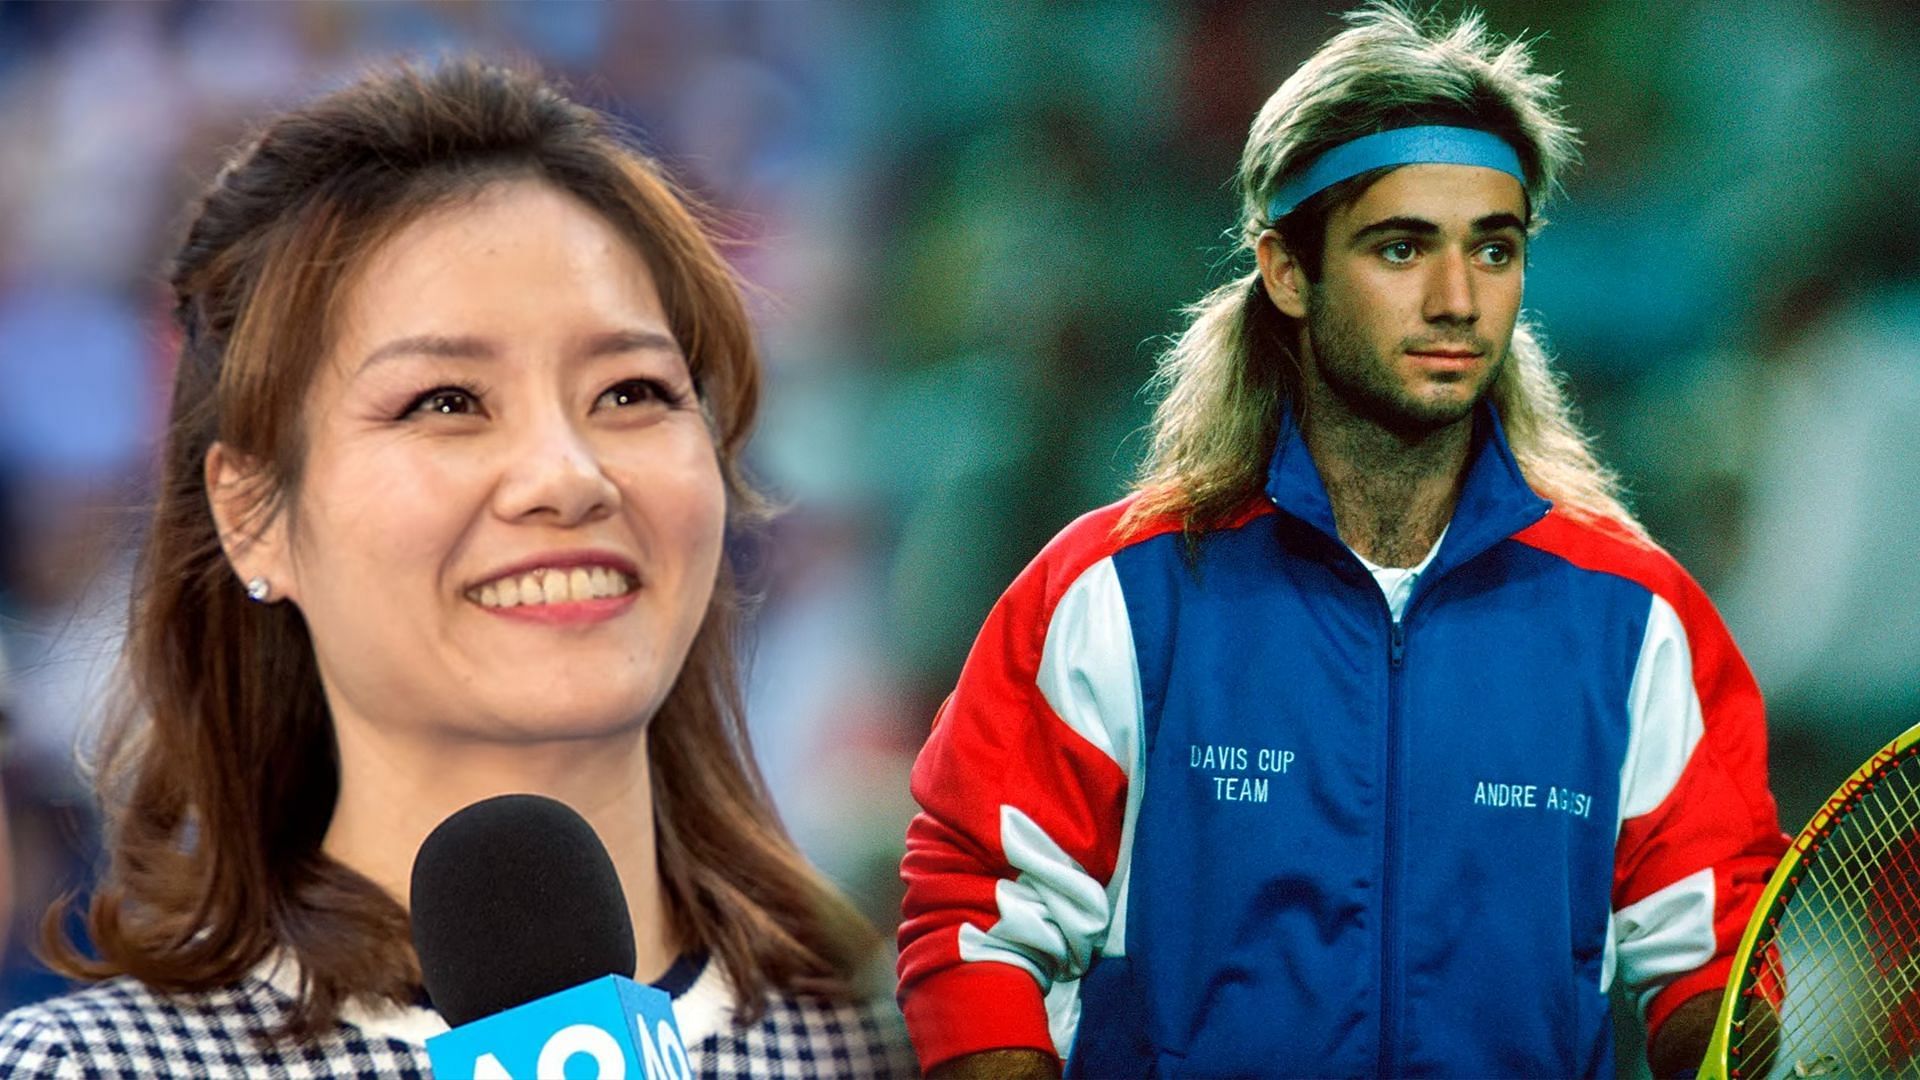 Andre Agassi is her idol, says Li Na